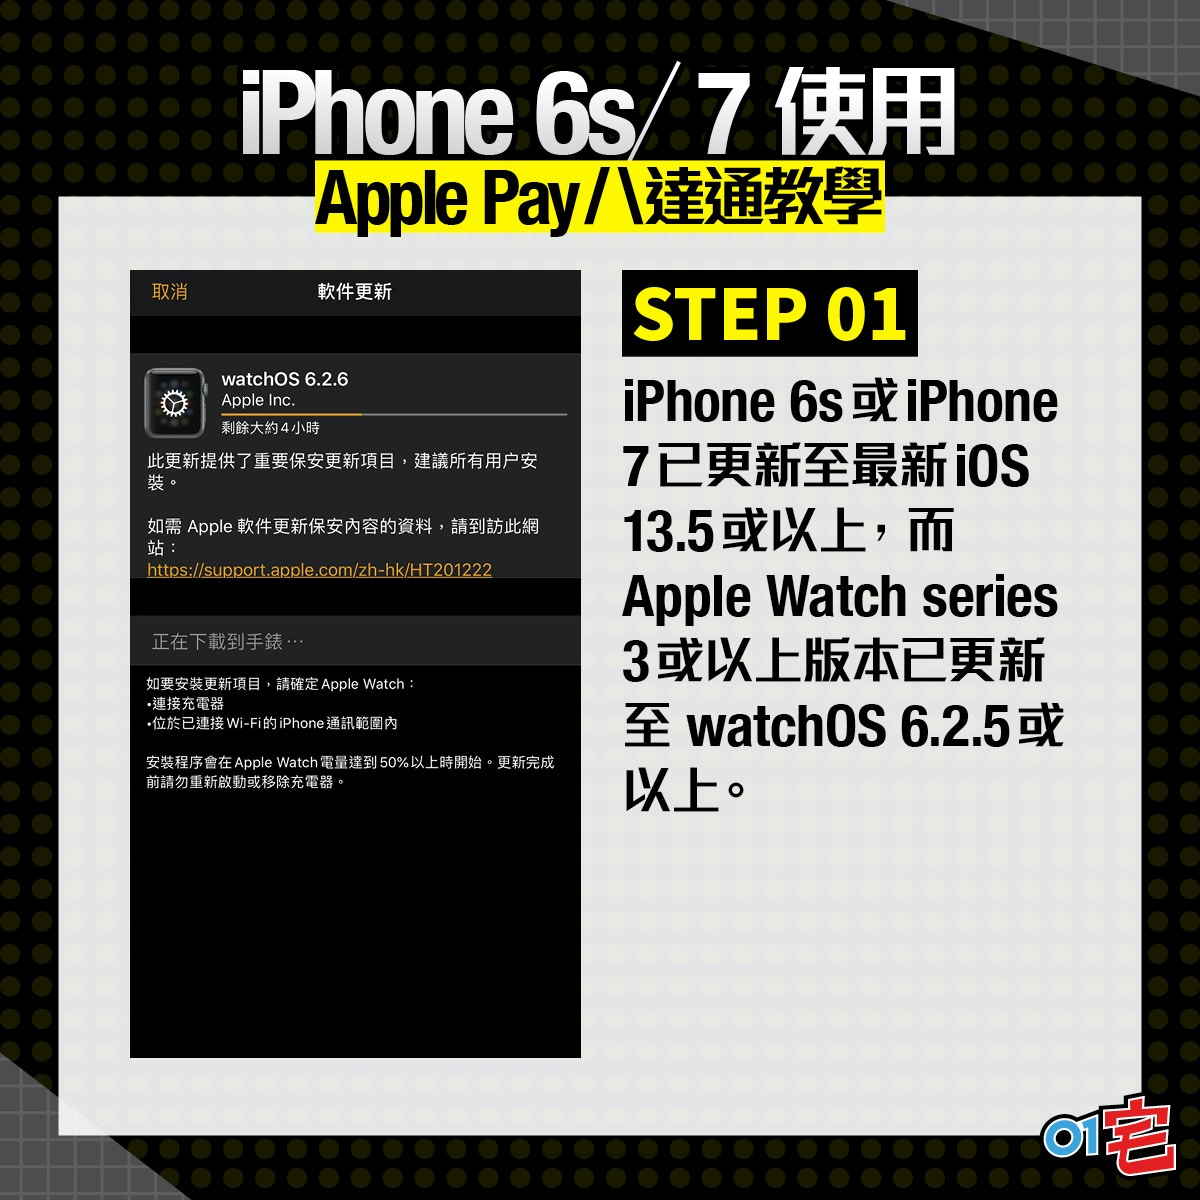 Iphone 6s 7 八達通apple Pay教學舊手機配apple Watch就用得